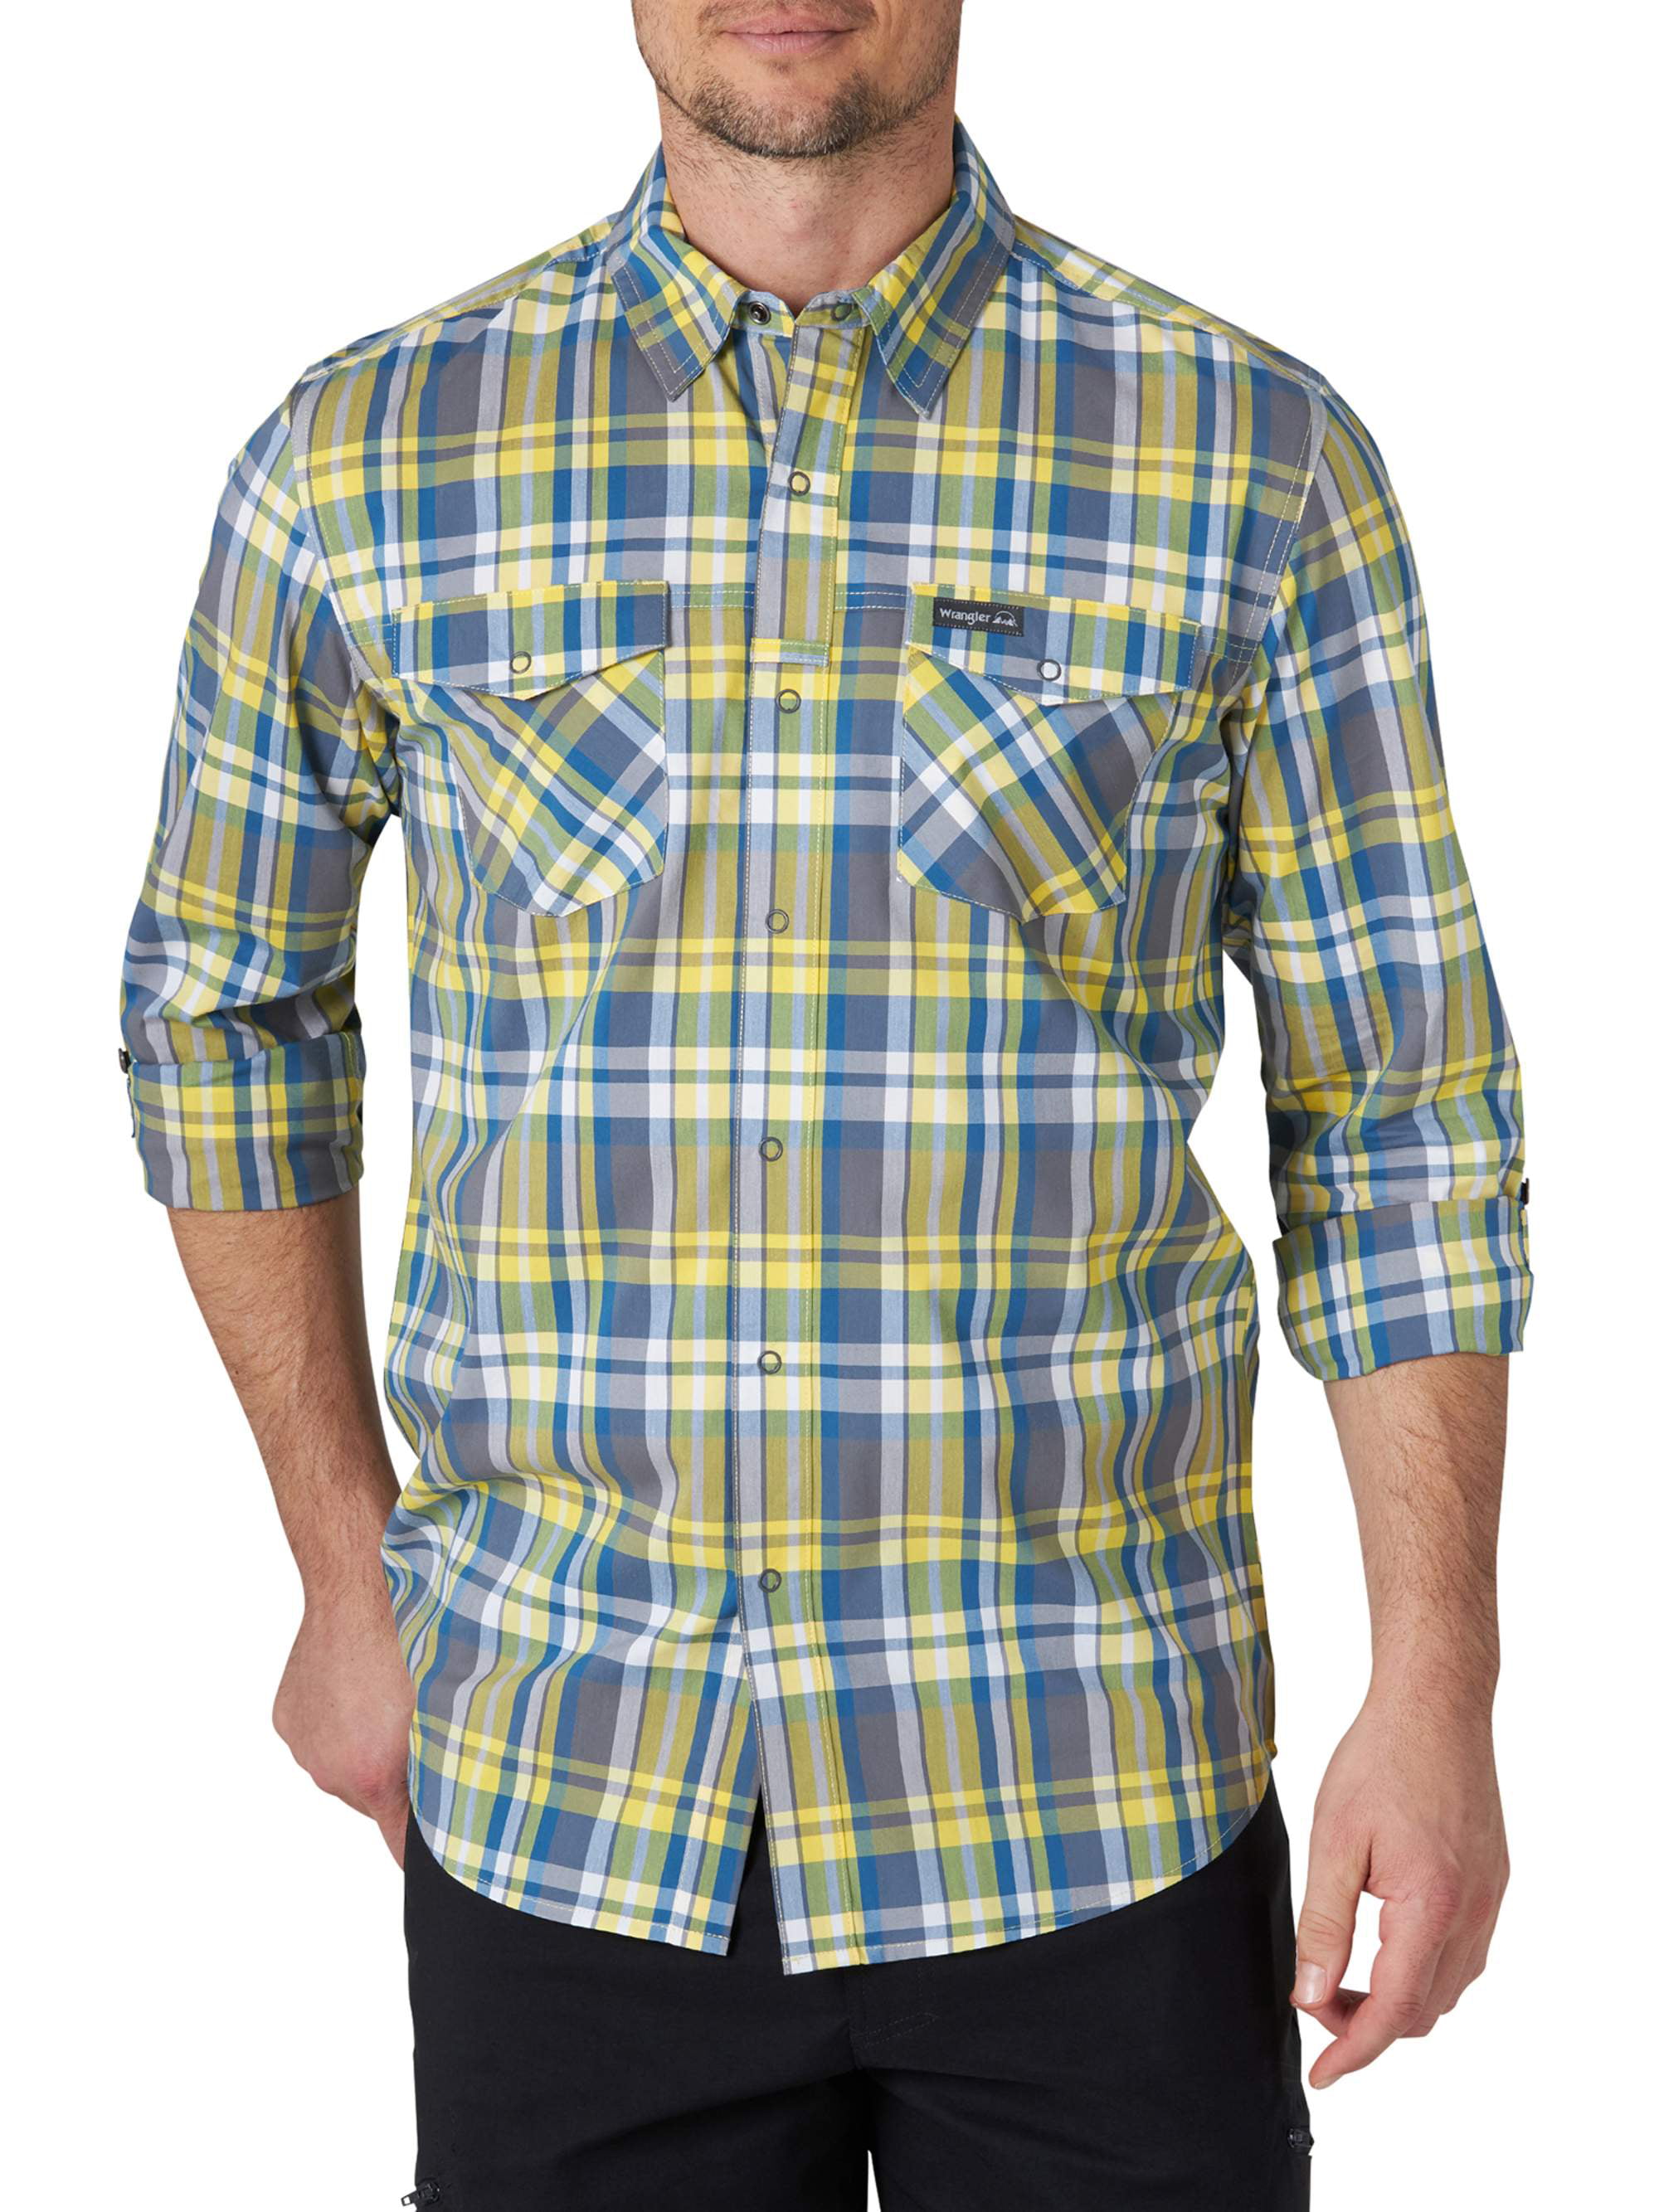 Wrangler Men's Long Sleeve Plaid Outdoor Utility Shirt - Walmart.com